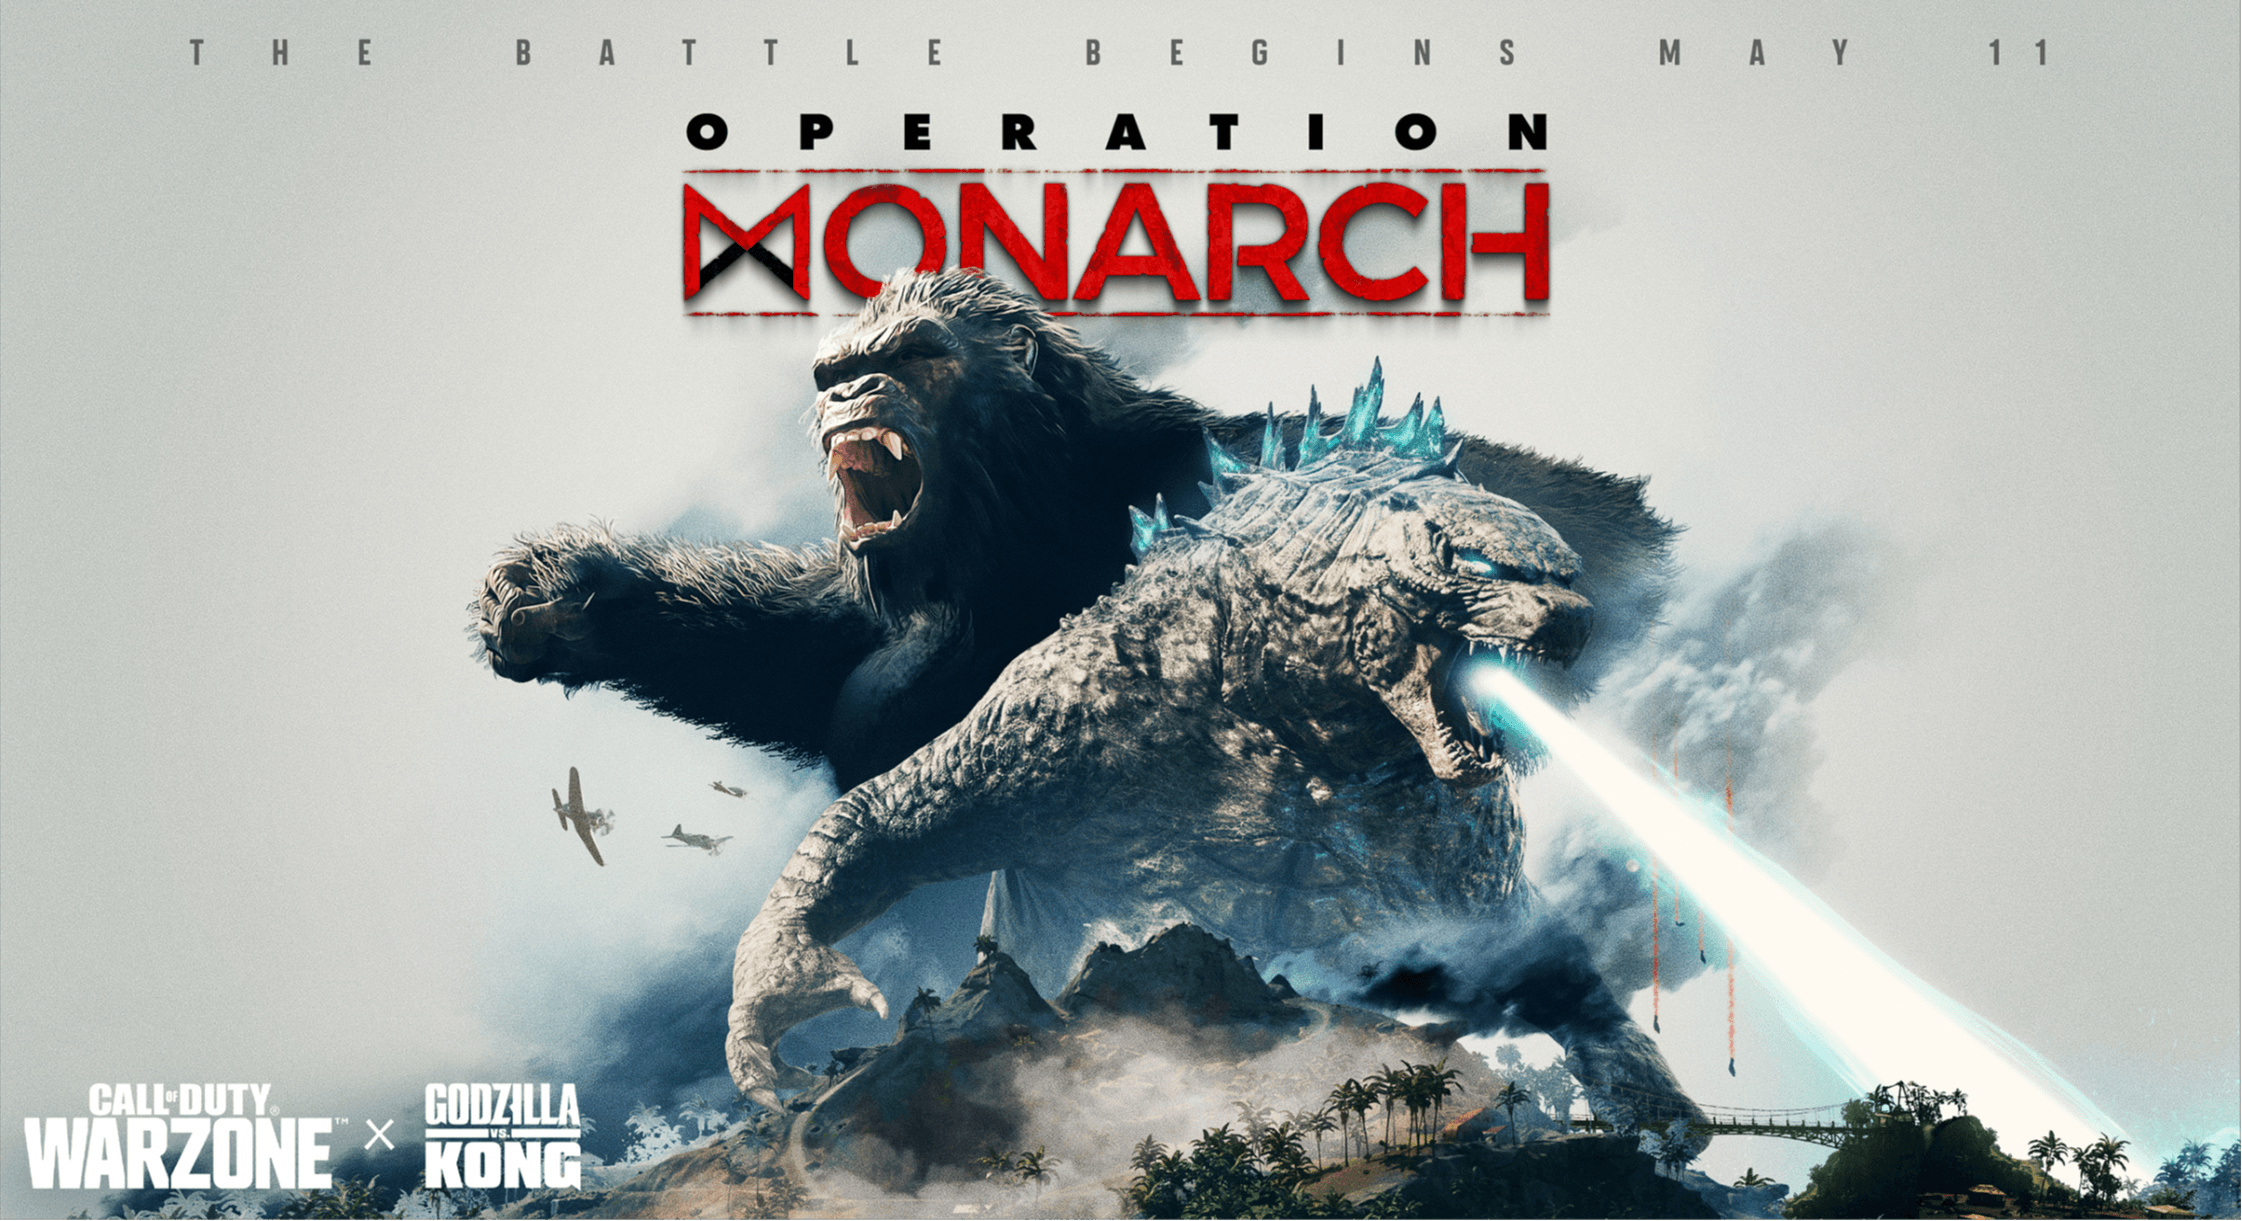 Key art of Operation Monarch showing Godizzla and Kong on Caldera